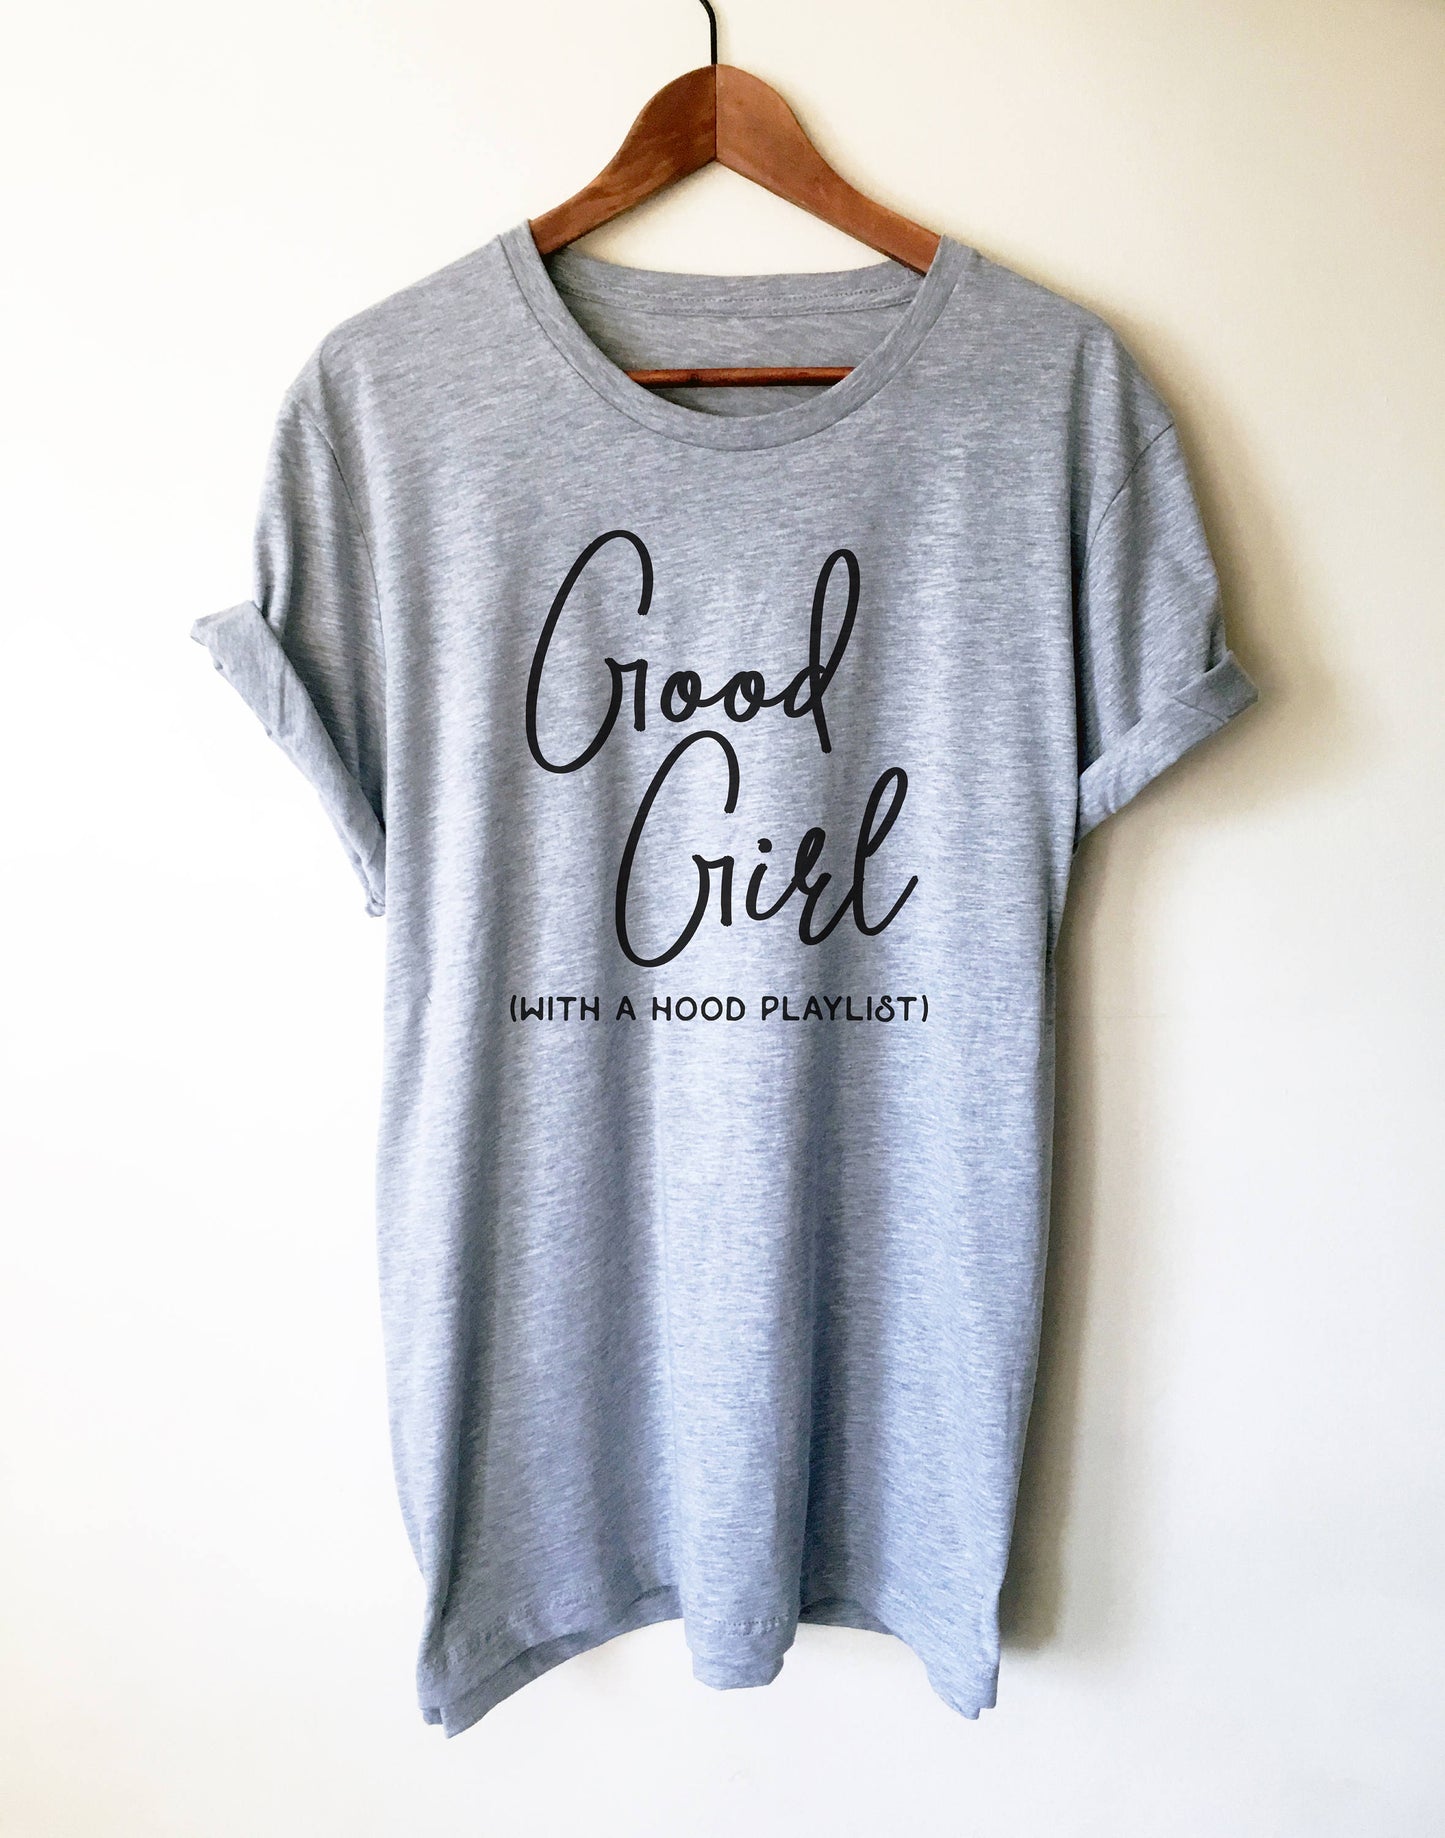 Good Girl With A Hood Playlist Unisex Shirt - Hip hop shirt, Rap shirt, Gangsta rap shirt, Music lover shirt, Music shirt, Karaoke shirt